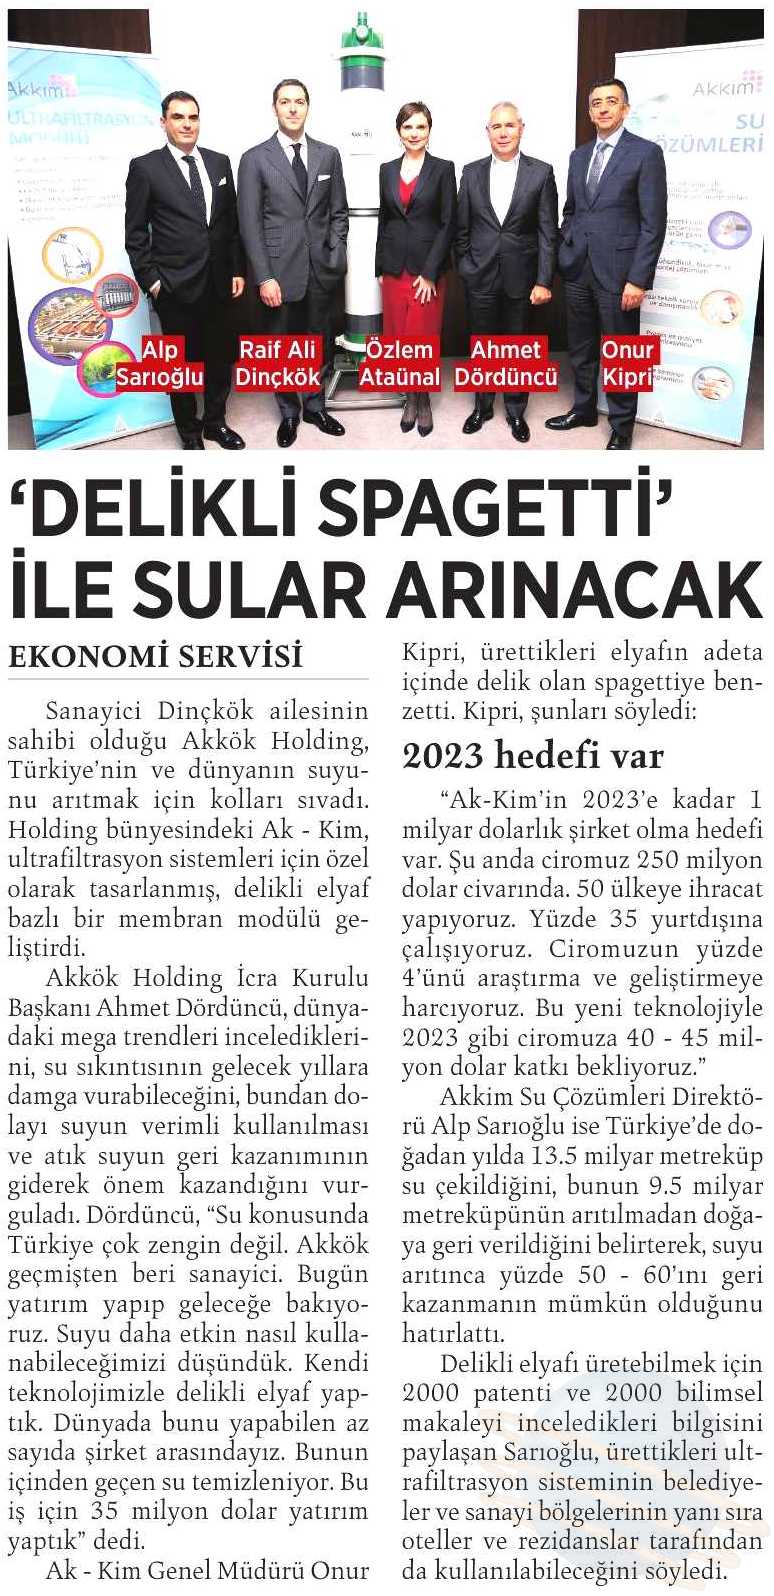 “Delikli Spagetti” ile sular arınacak / Milliyet – 4 Mart 2016